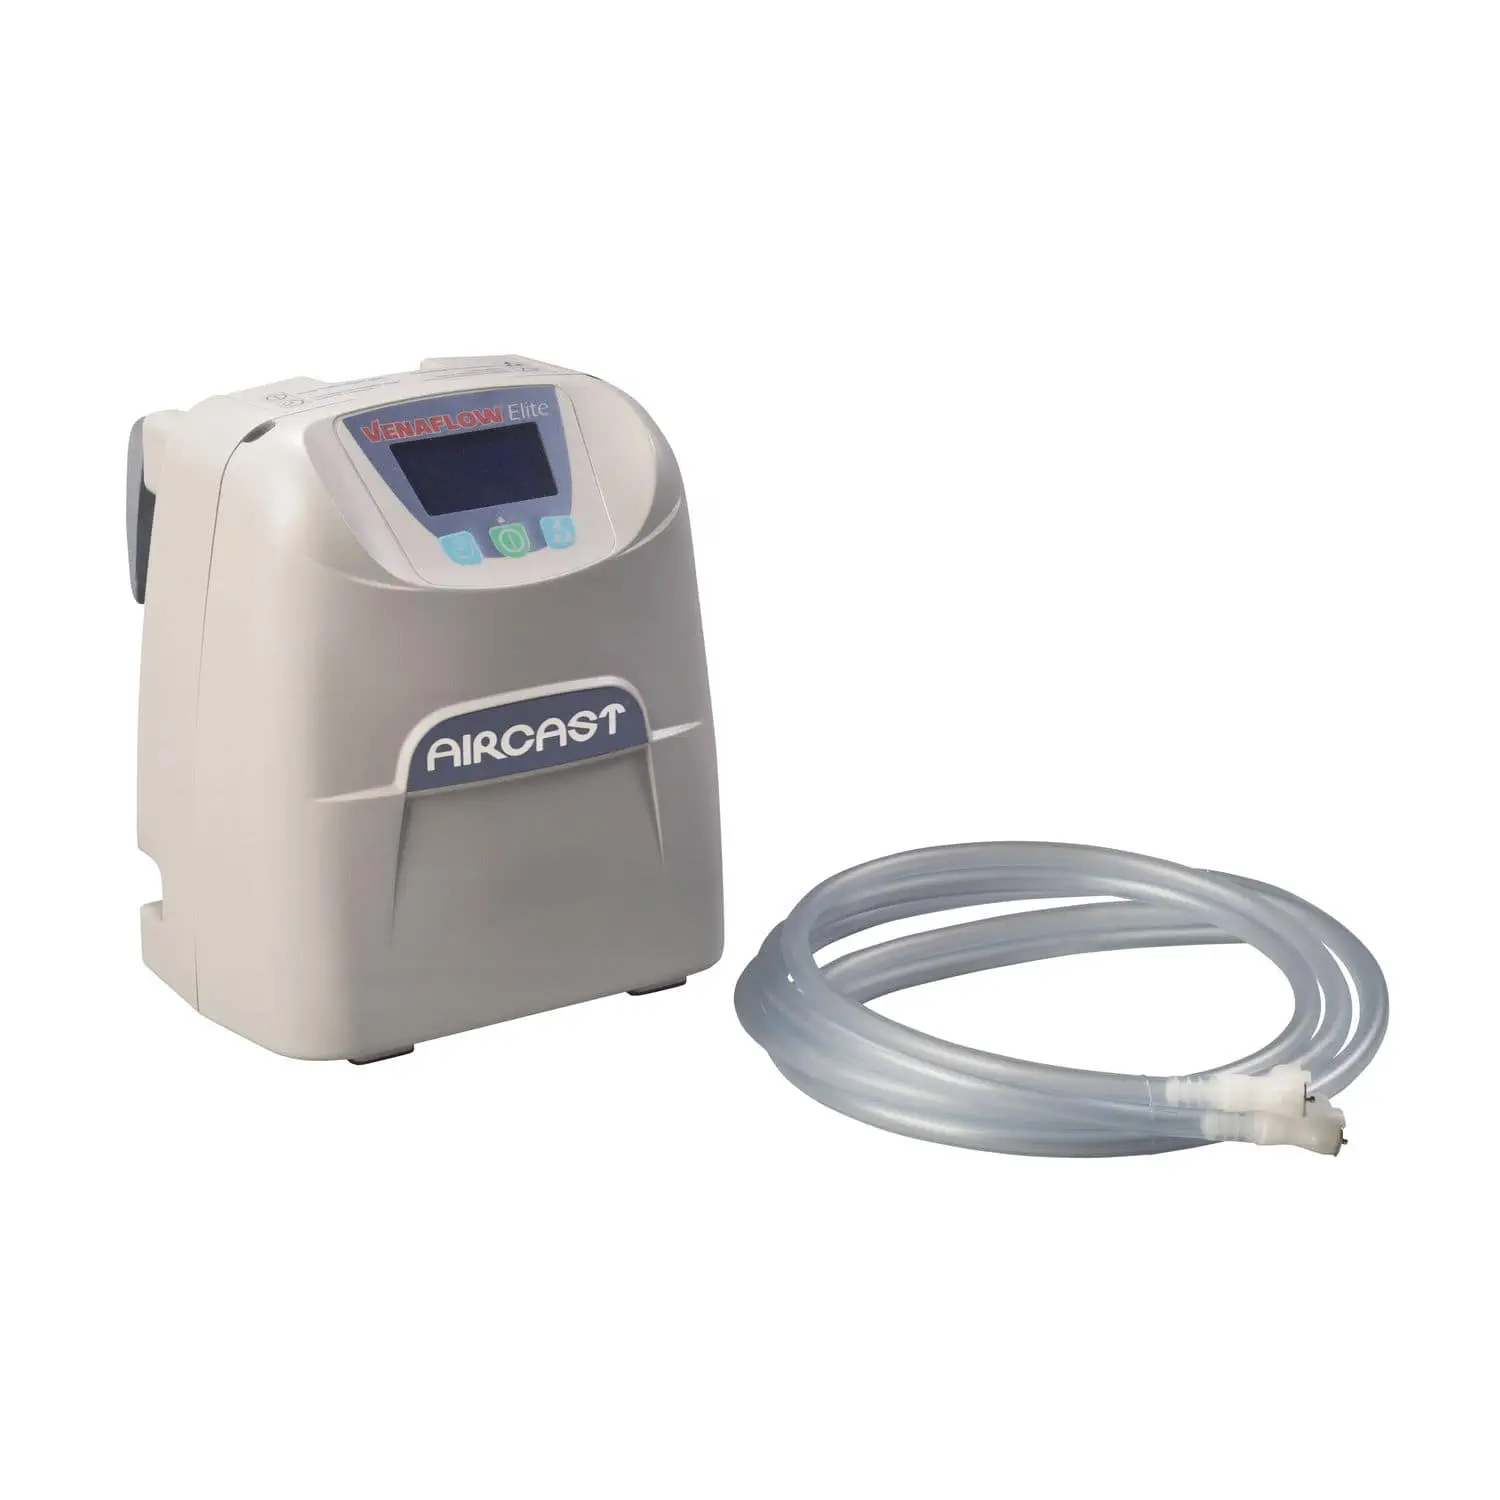 เครื่องป้องกันหลอดเลือดส่วนลึกอุดตันด้วยแรงดันอากาศอัตโนมัติ  Whole body pressure therapy unit VenaFlow® Elite  Aircast